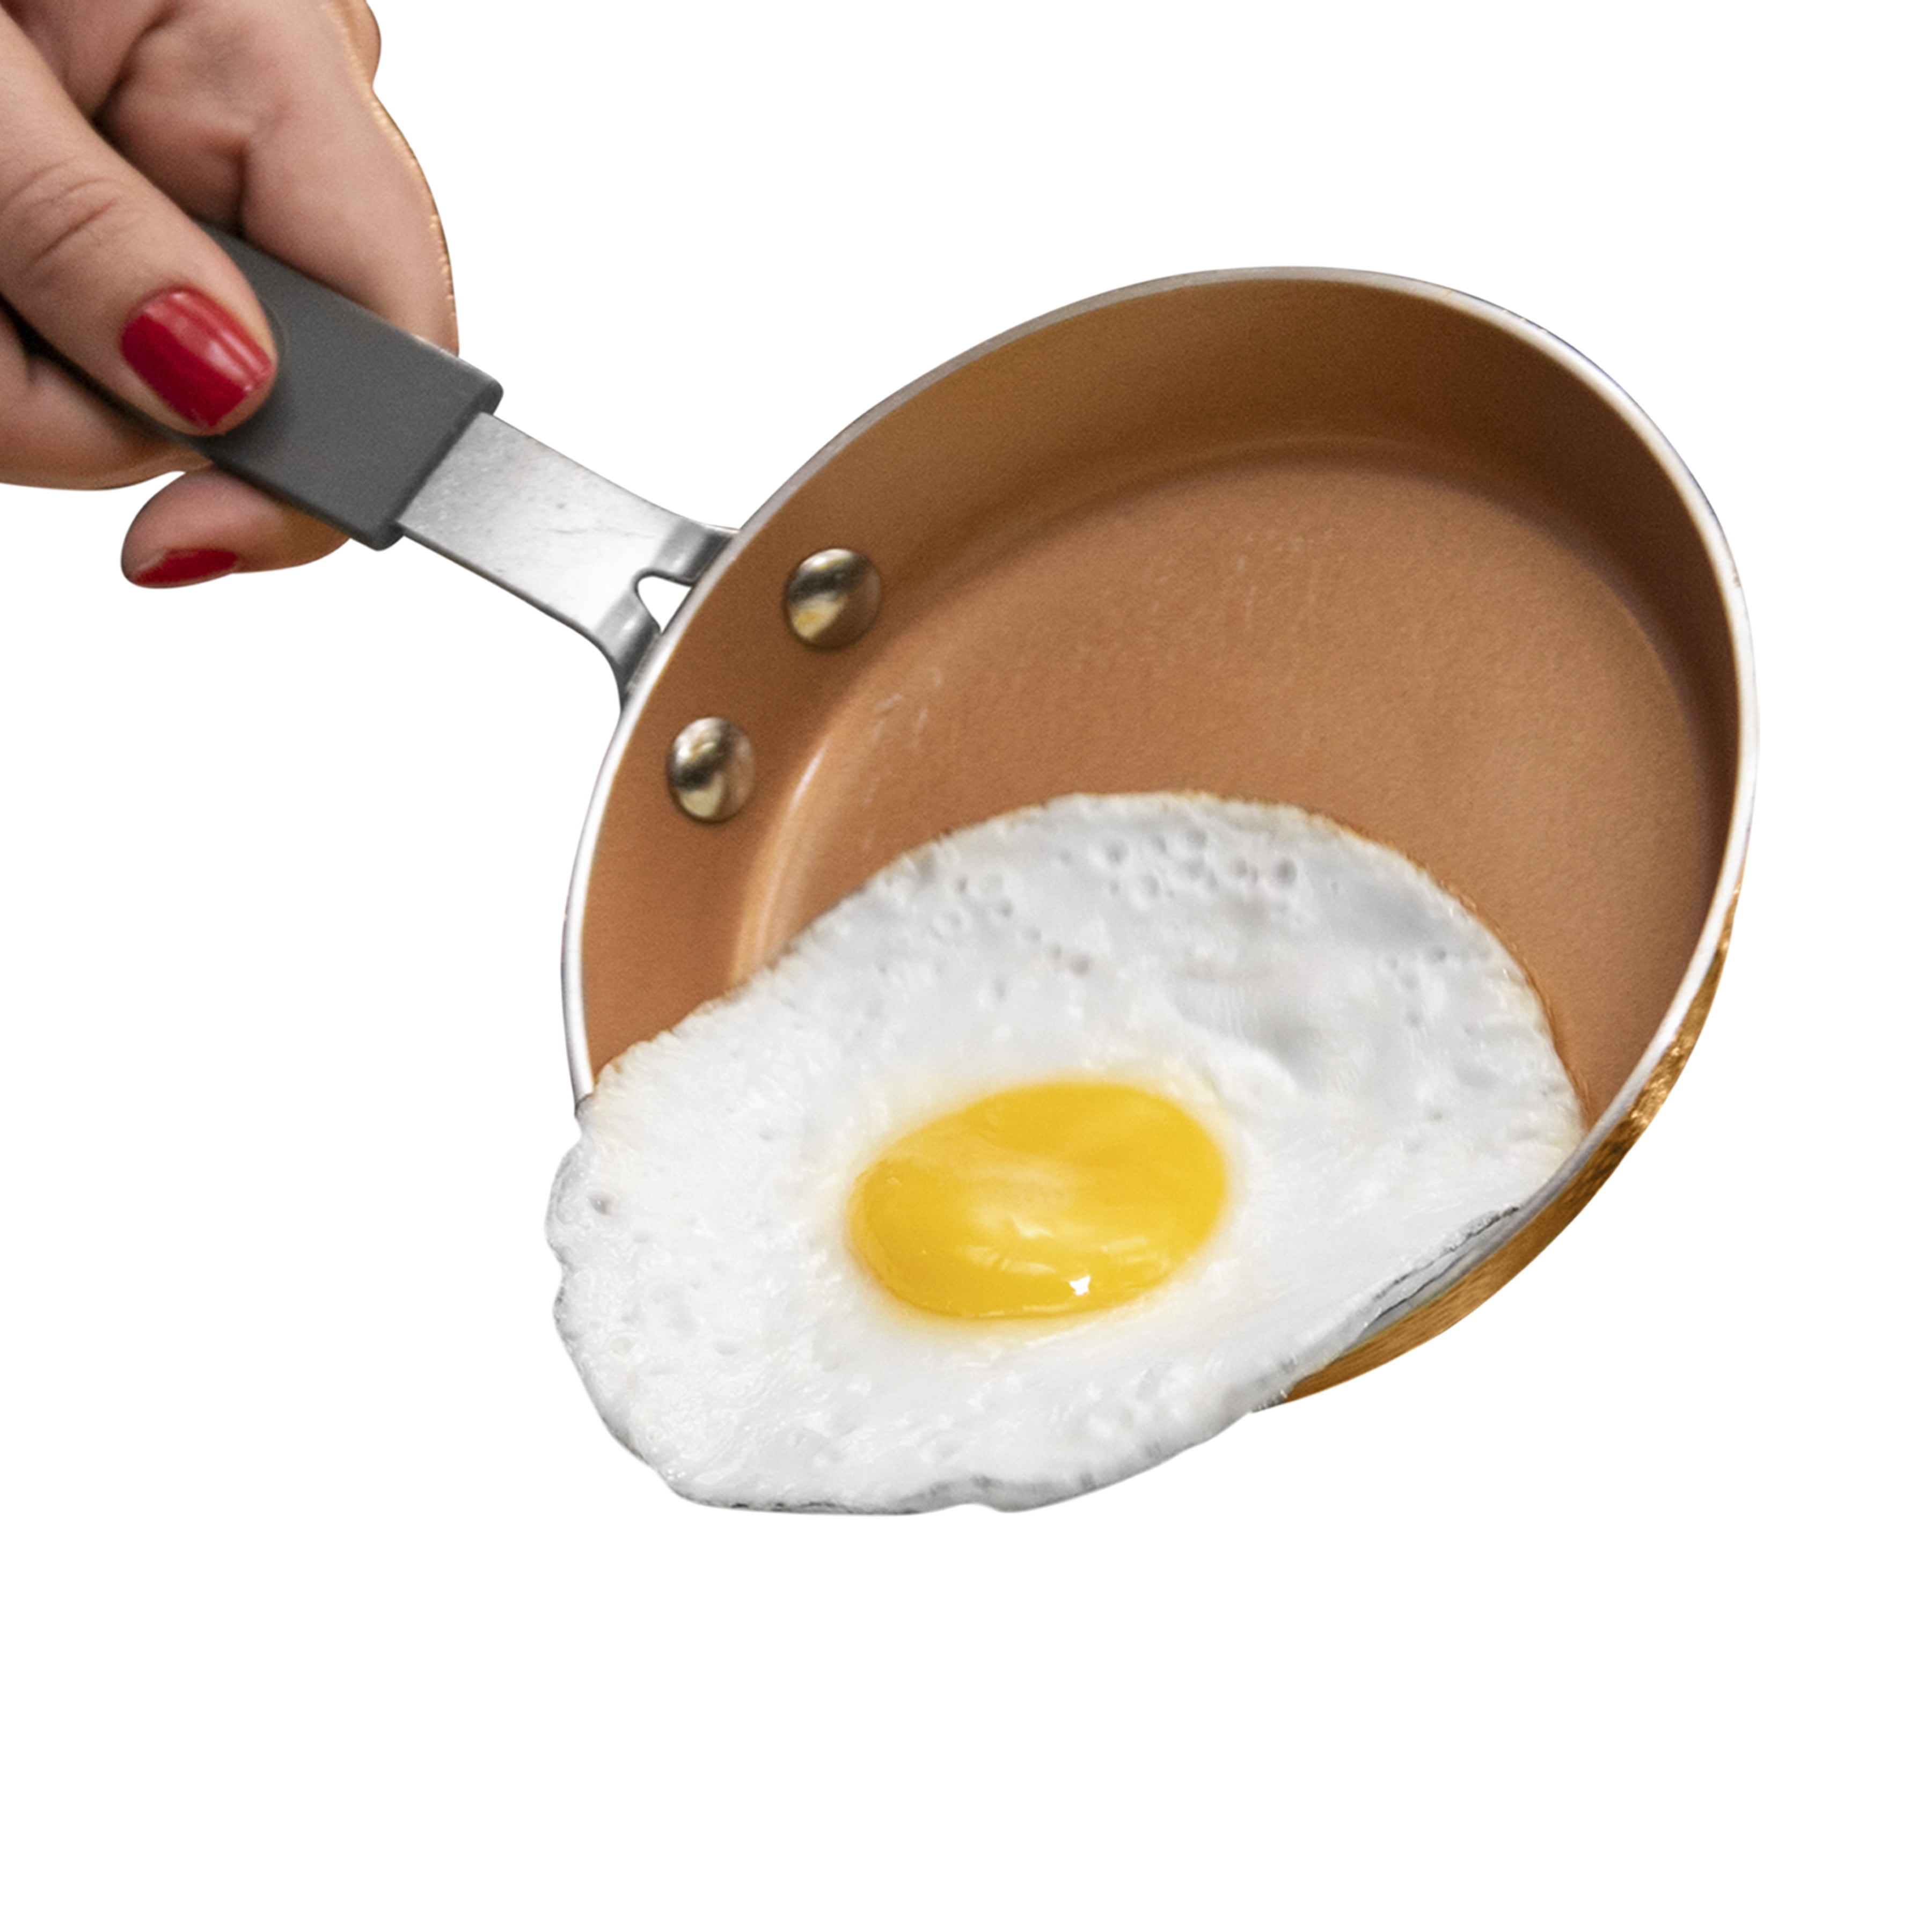 Homeplate Steel Nonstick 5.5-inch Mini Egg Pan – Shop Rozel